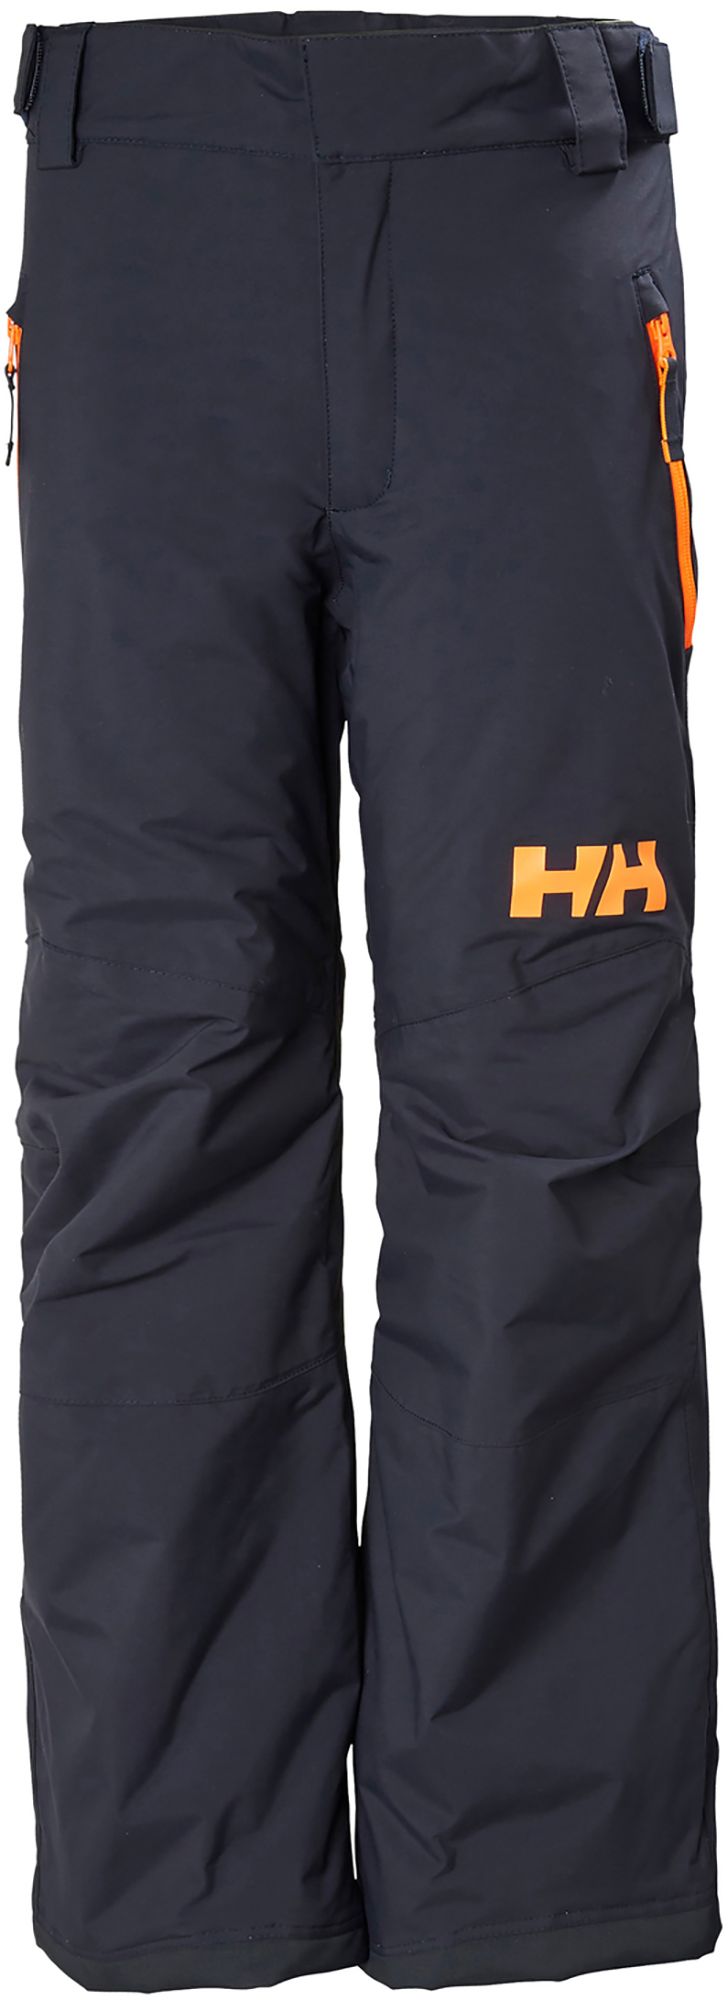 Photos - Ski Wear Helly Hansen Junior's Legendary Pants, Boys', Size 12, Navy 21HLYYYLGNDRYP 